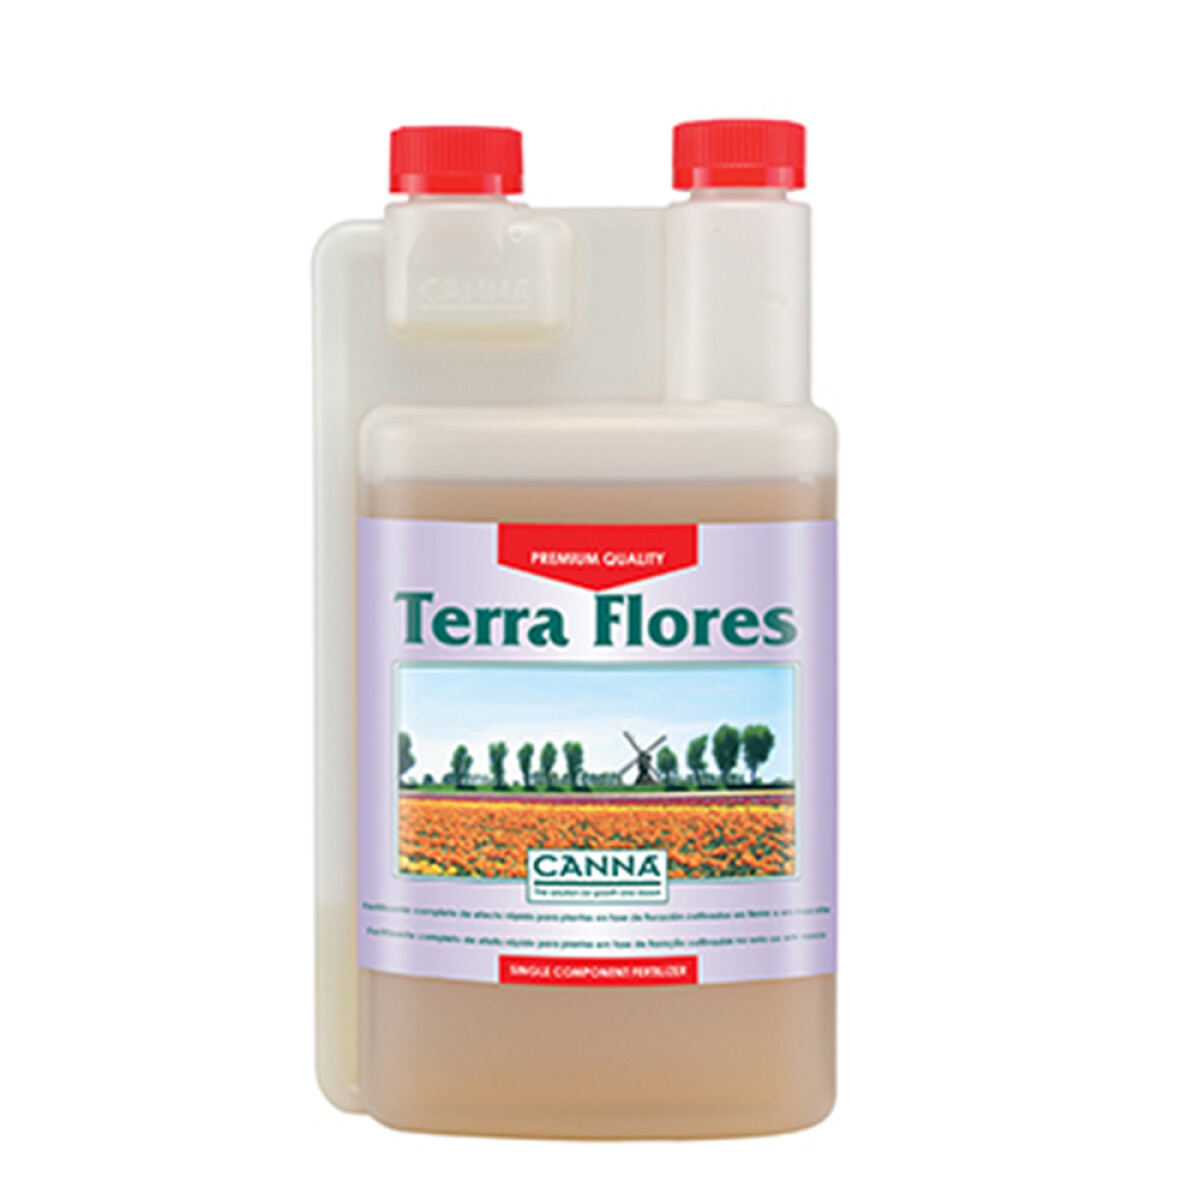 TERRA FLORES CANNA - 1L 